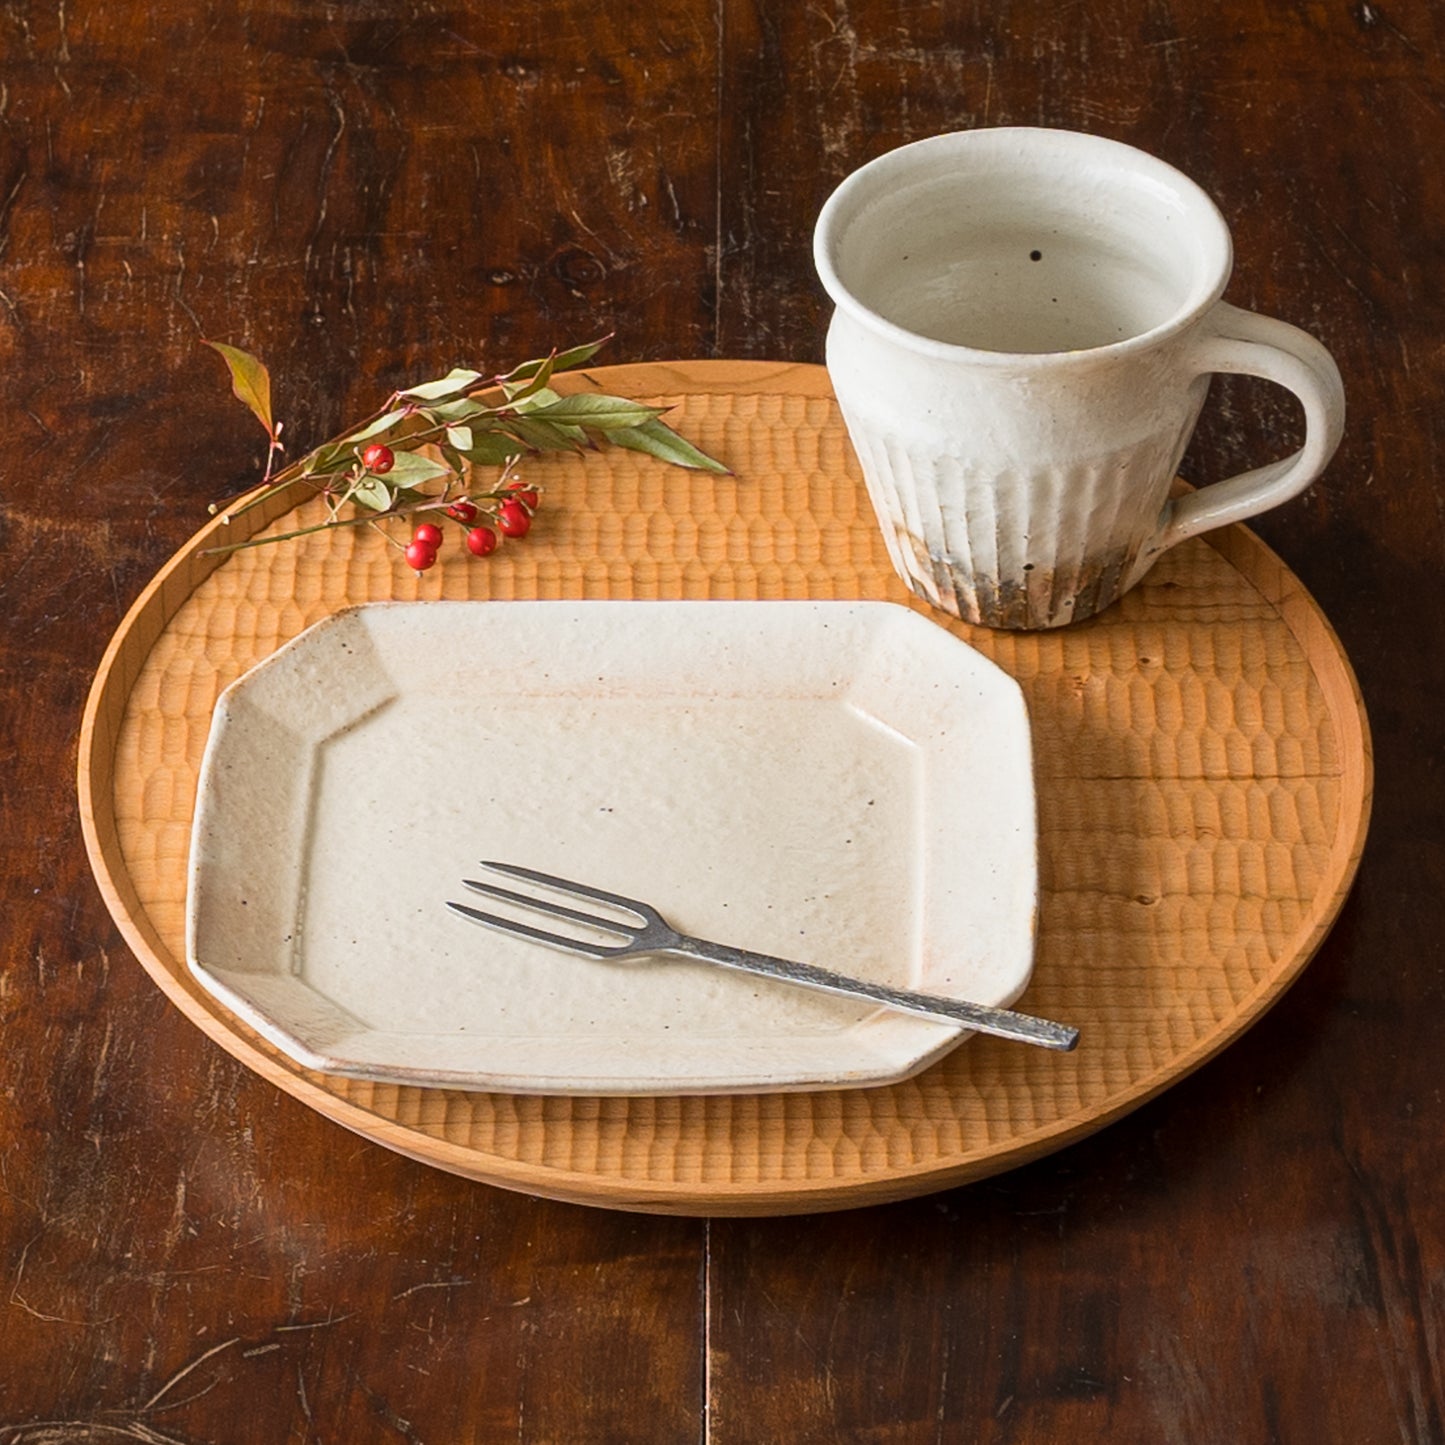 おうちカフェを素敵に彩ってくれる古谷製陶所古谷浩一さんの鉄散しのぎマグと八角ケーキ皿